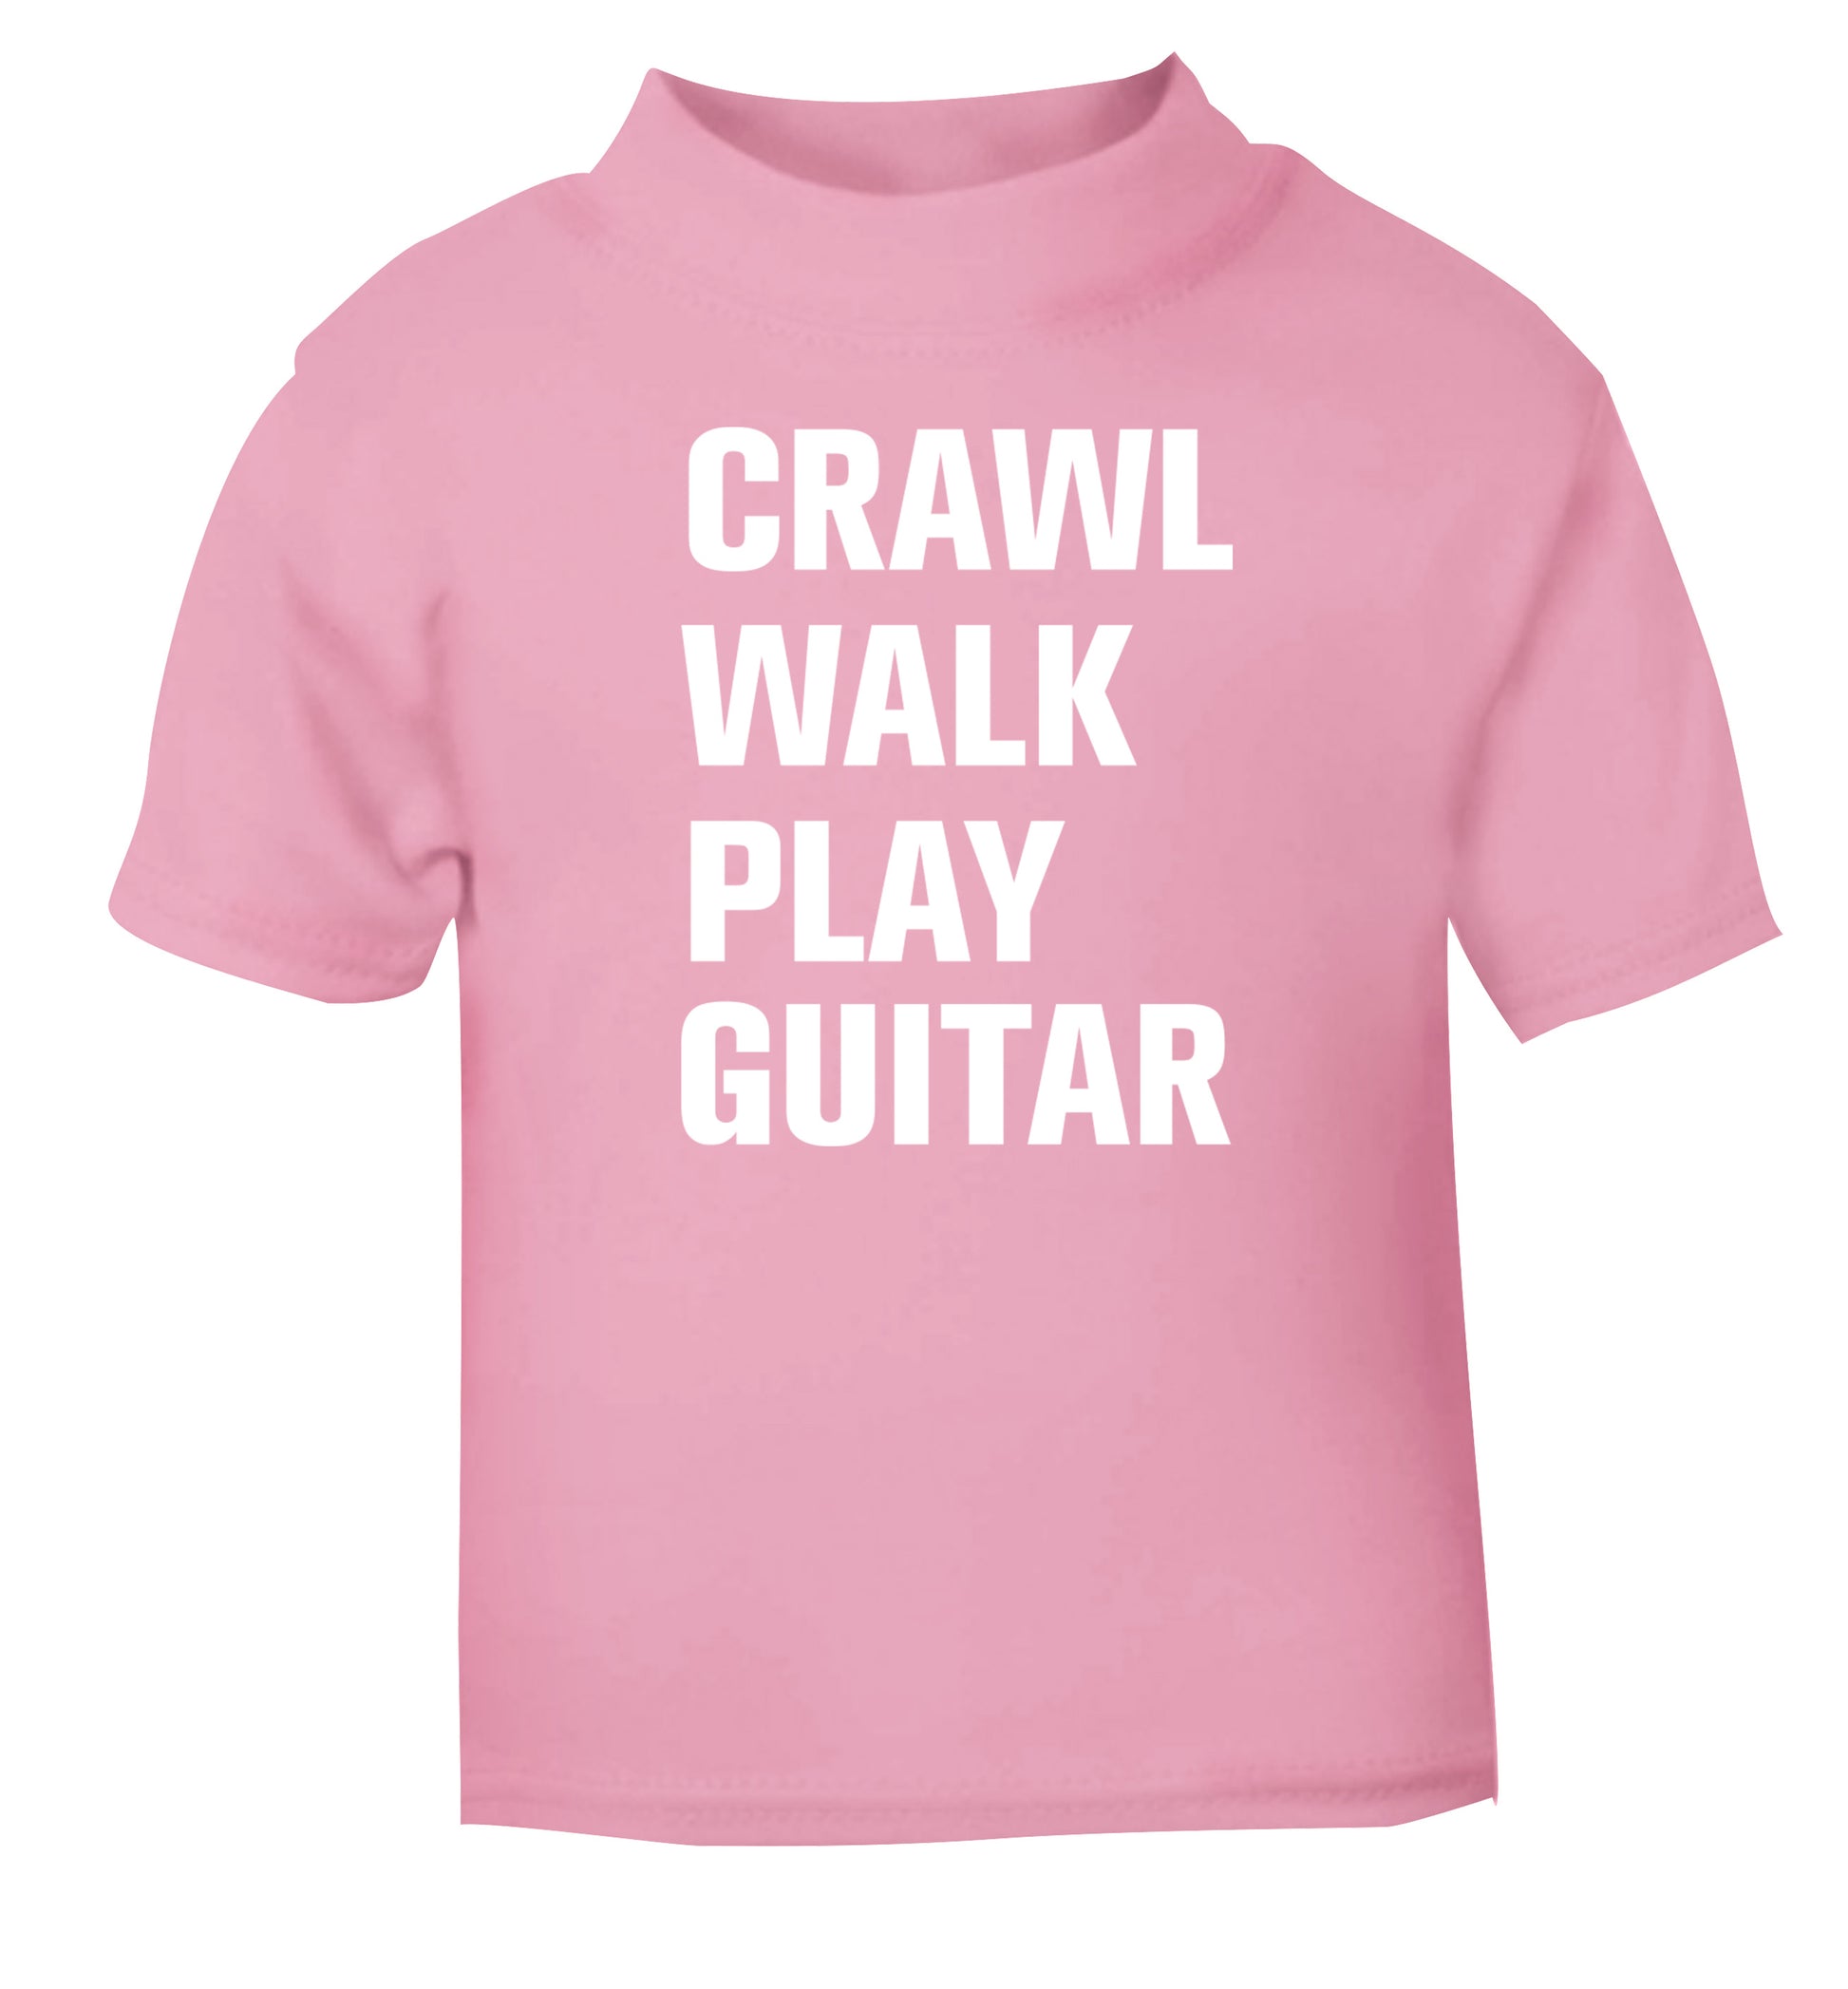 Crawl walk play guitar light pink Baby Toddler Tshirt 2 Years